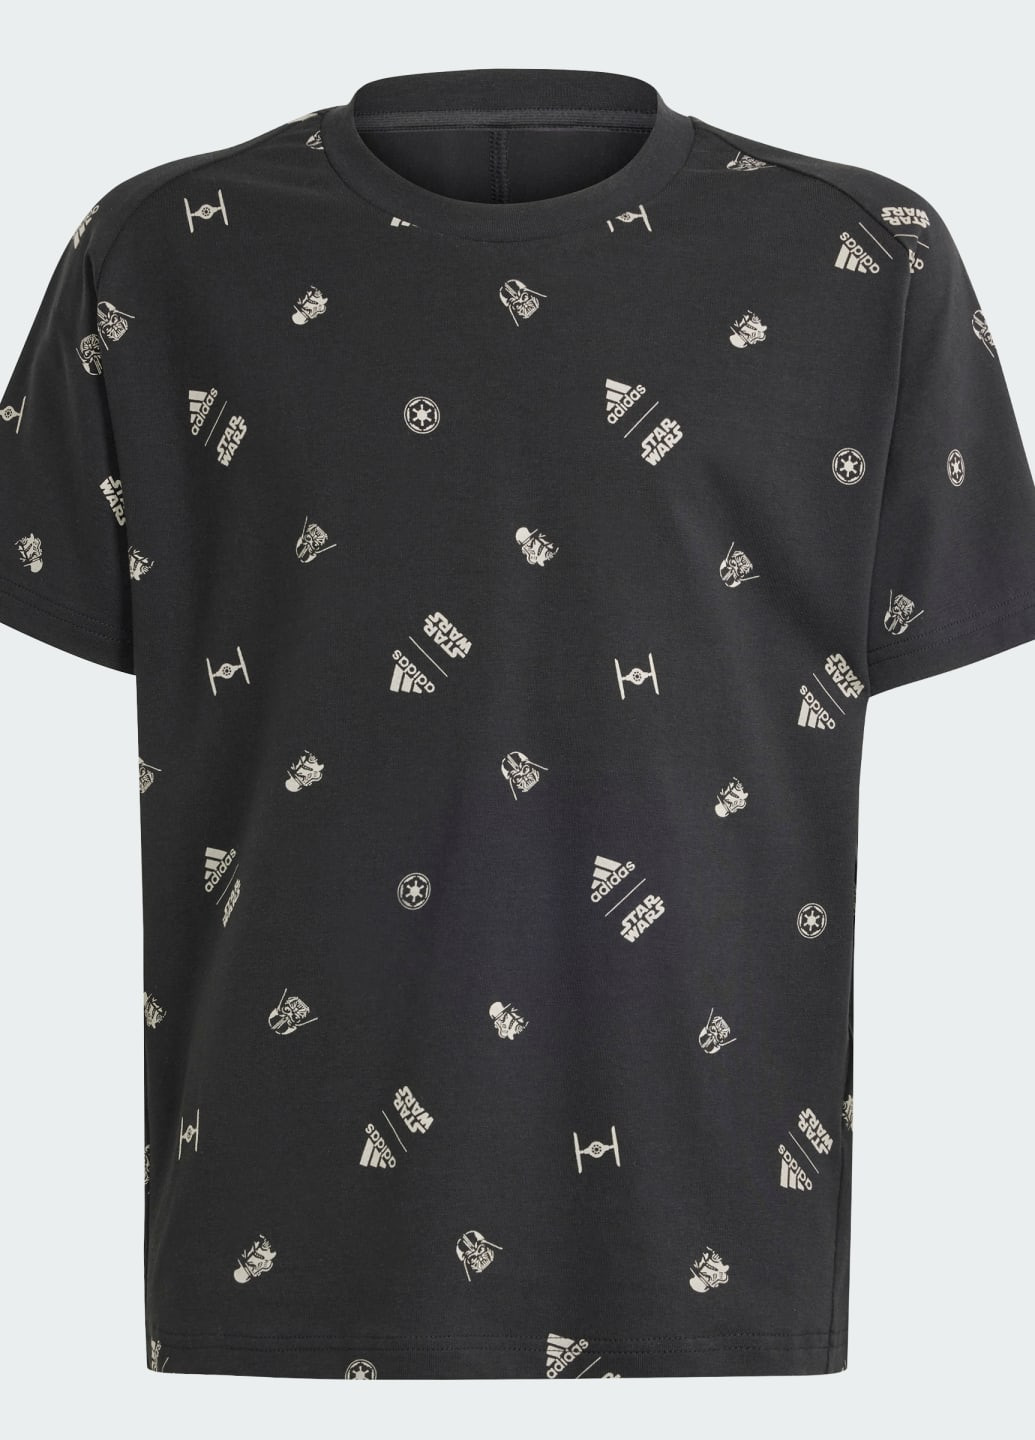 Чорна демісезонна футболка x star wars z.n.e. adidas